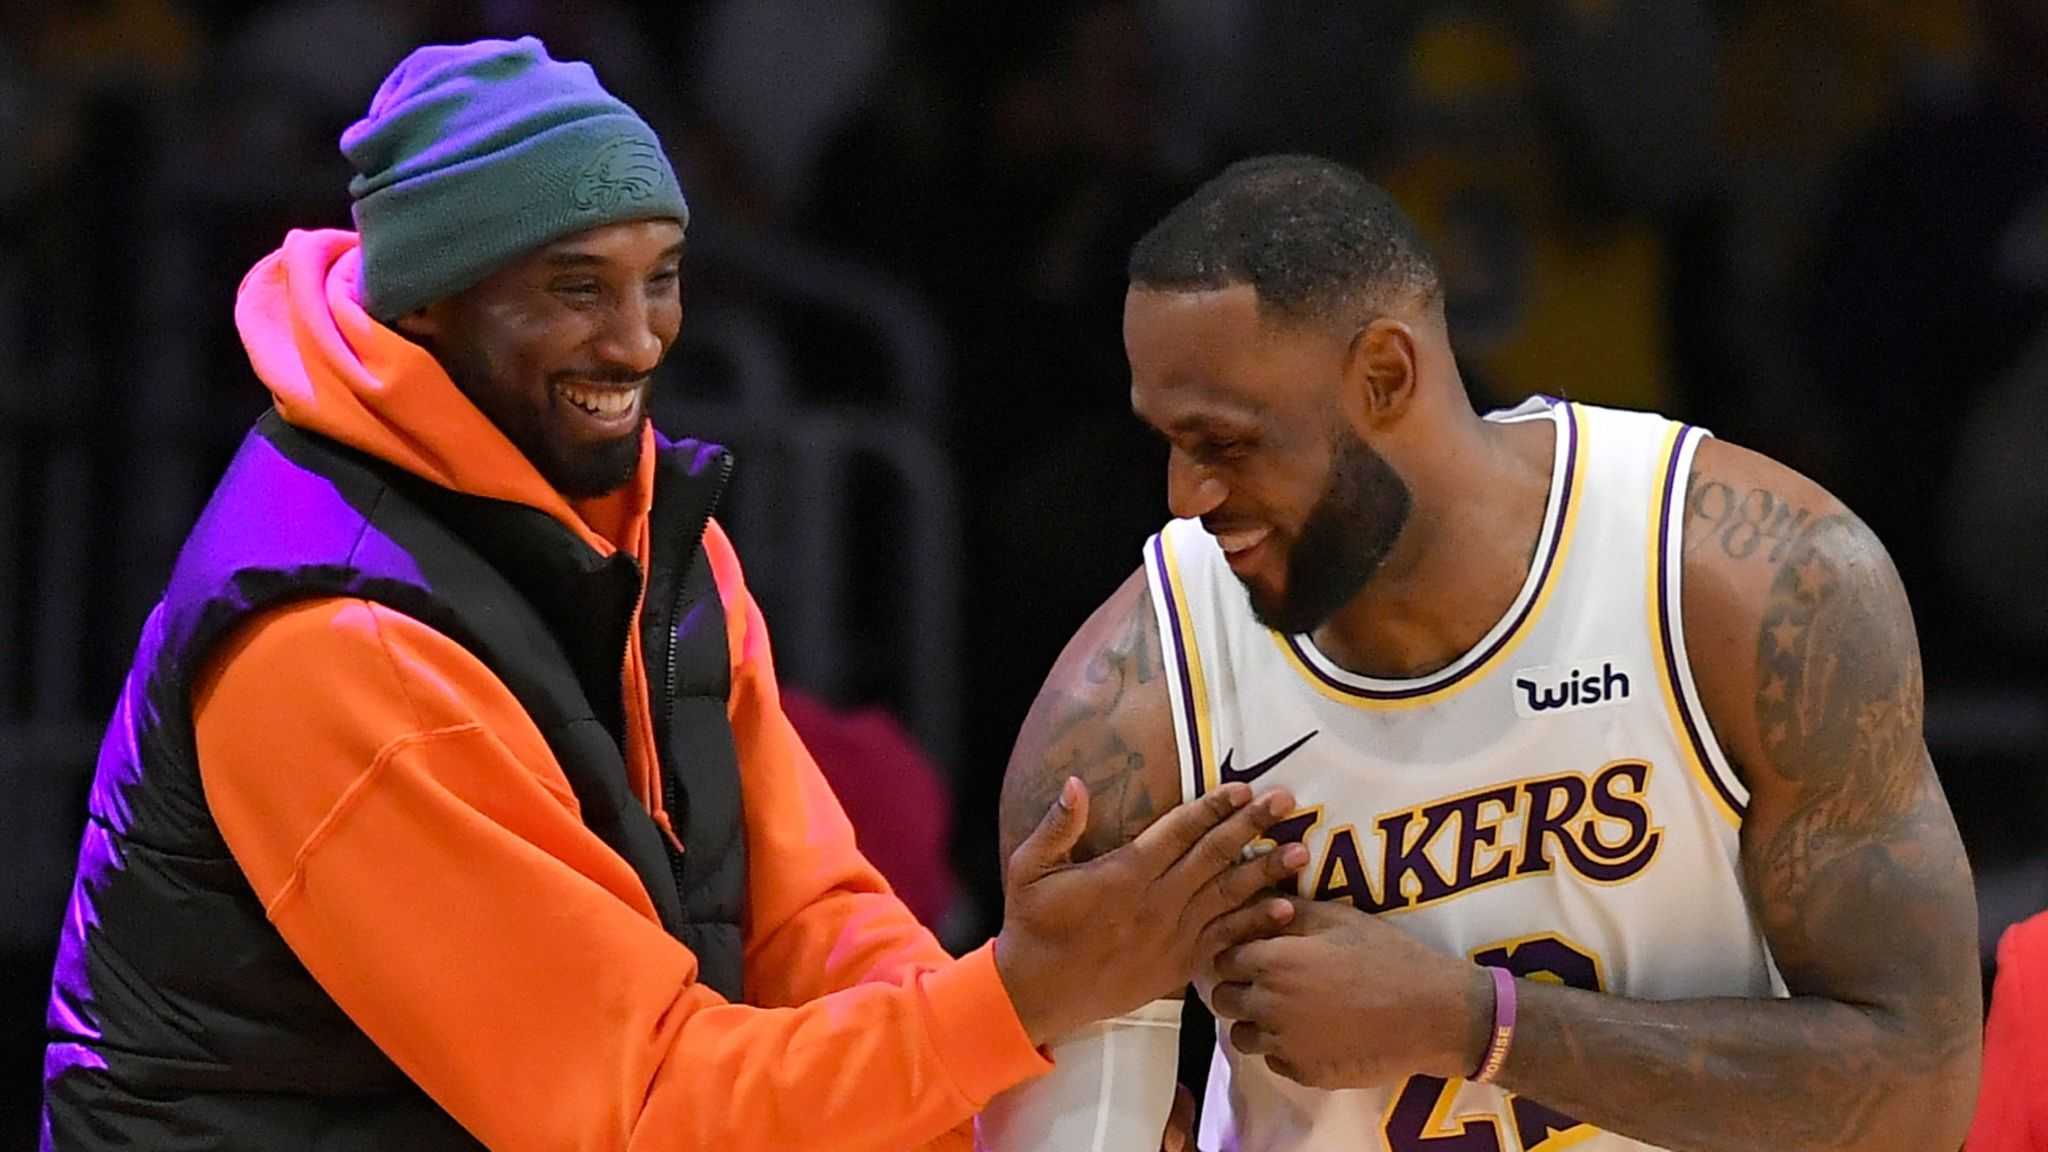 «Un peu plus d'affordance de cela»: l'entraîneur des Lakers révèle comment Kobe Bryant a inspiré son équipe